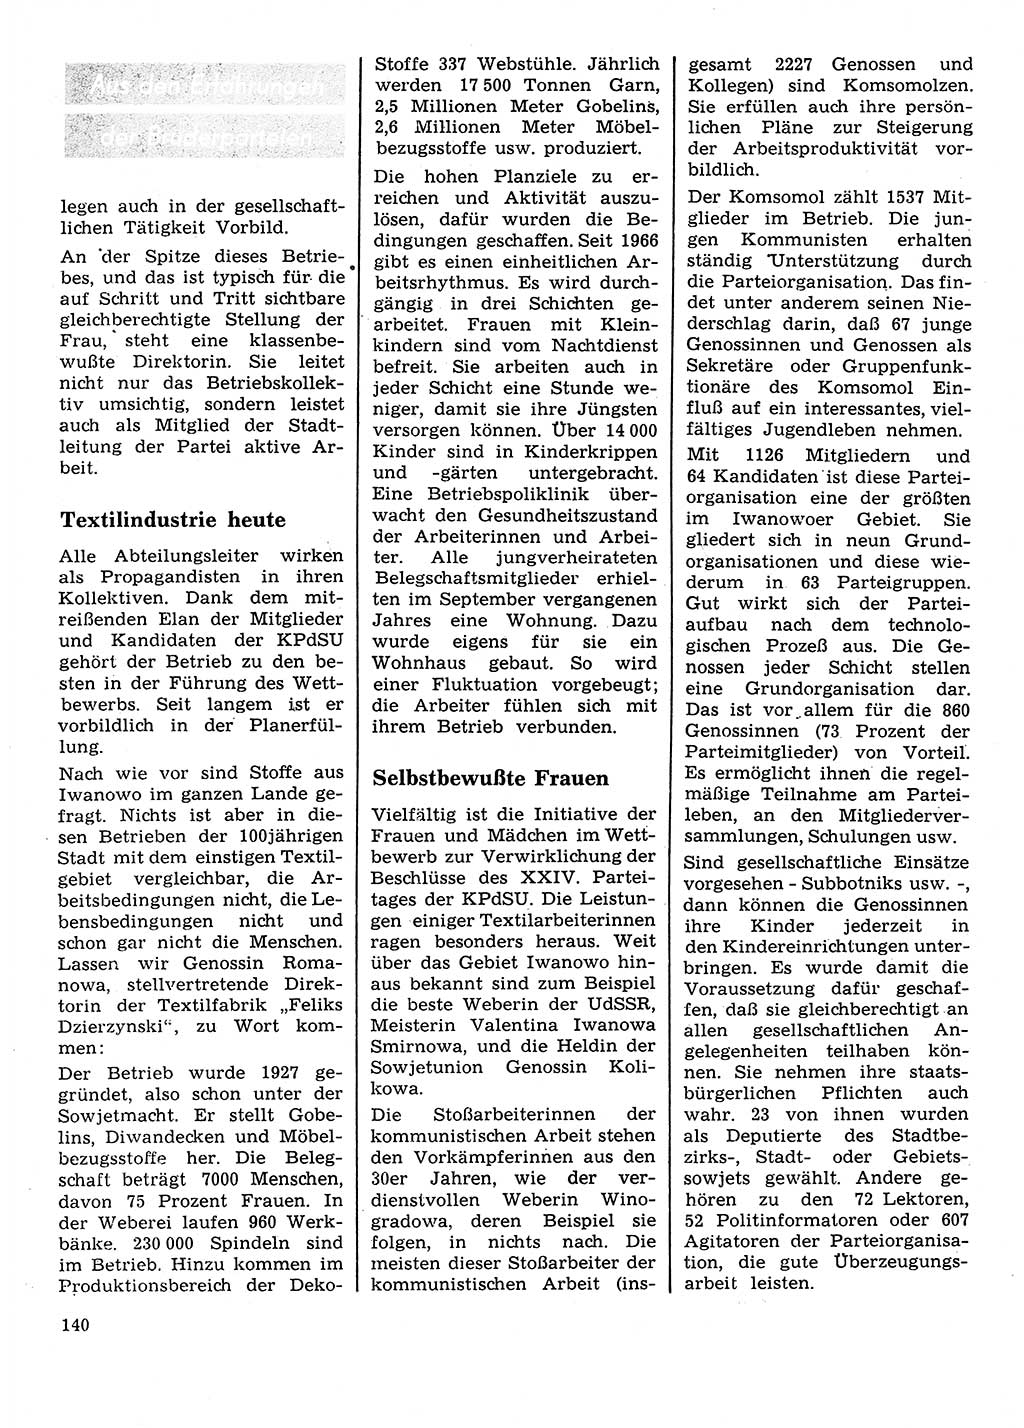 Neuer Weg (NW), Organ des Zentralkomitees (ZK) der SED (Sozialistische Einheitspartei Deutschlands) für Fragen des Parteilebens, 28. Jahrgang [Deutsche Demokratische Republik (DDR)] 1973, Seite 140 (NW ZK SED DDR 1973, S. 140)